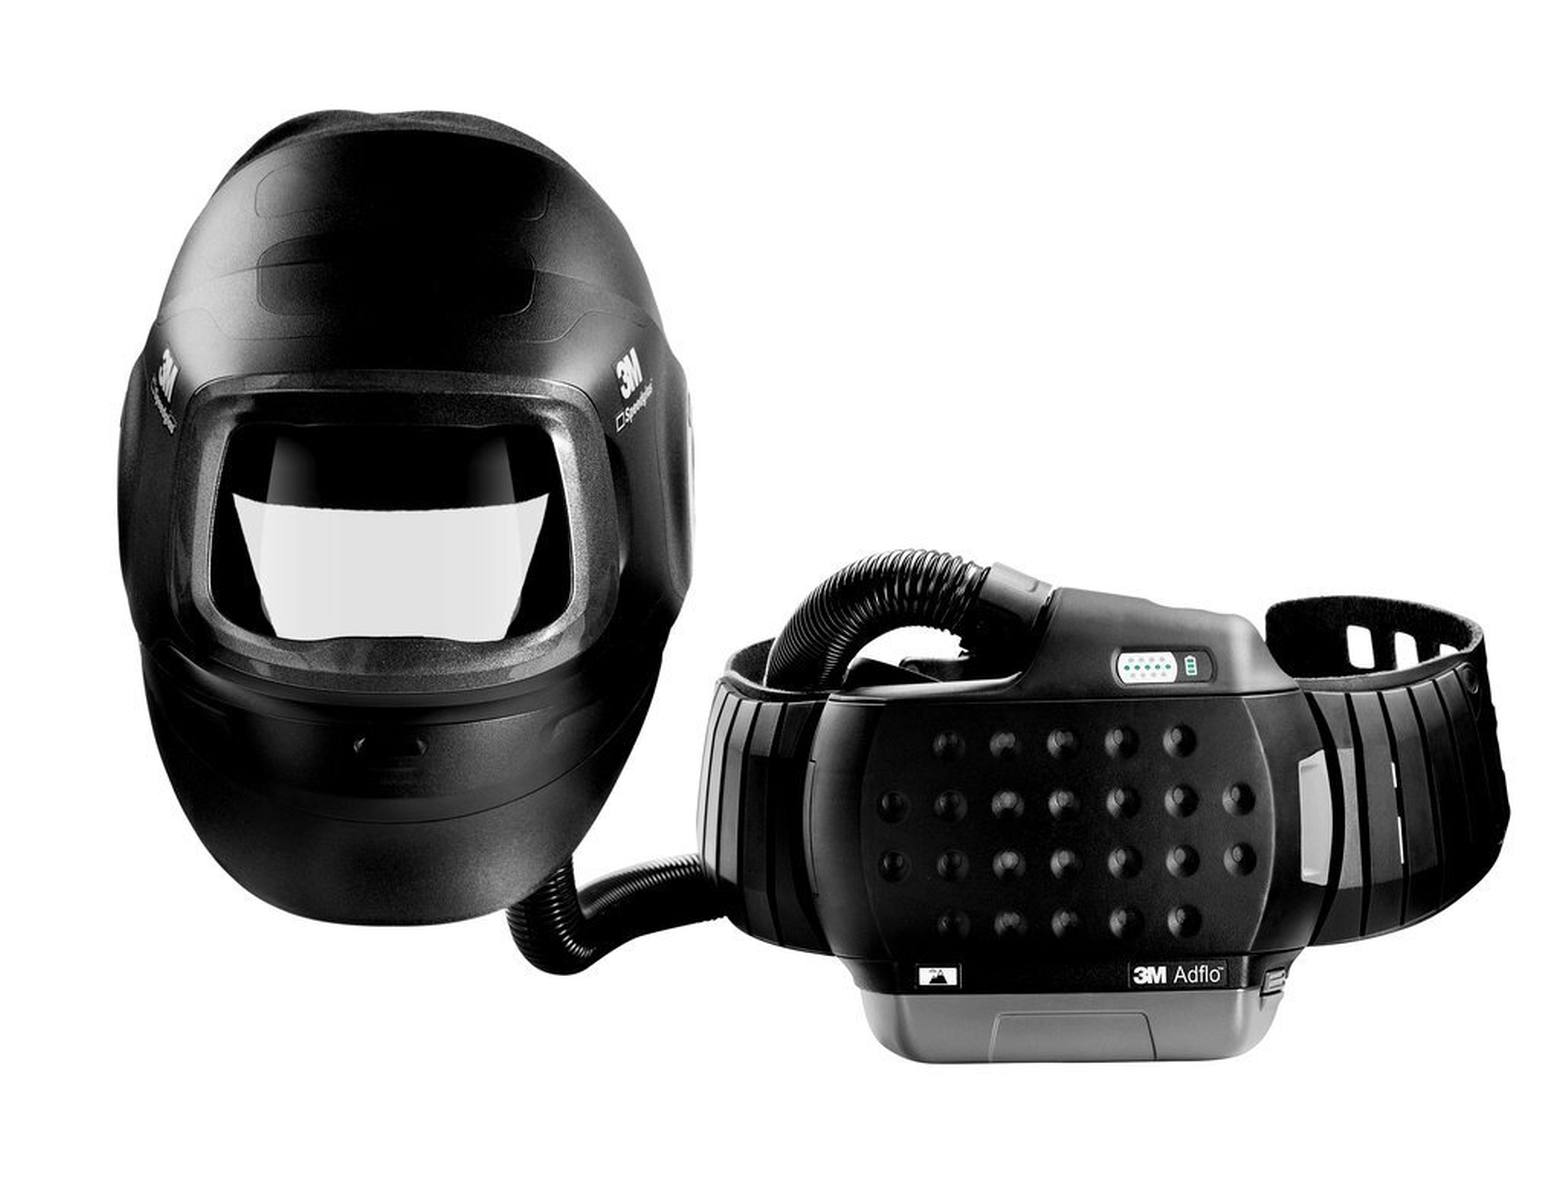 maschera per saldatura ad alte prestazioni 3M Speedglas G5-01 con respiratore 3M Adflo, batteria ad alte prestazioni, set di avviamento dei materiali di consumo e borsa di stoccaggio, senza filtro di saldatura, H617809